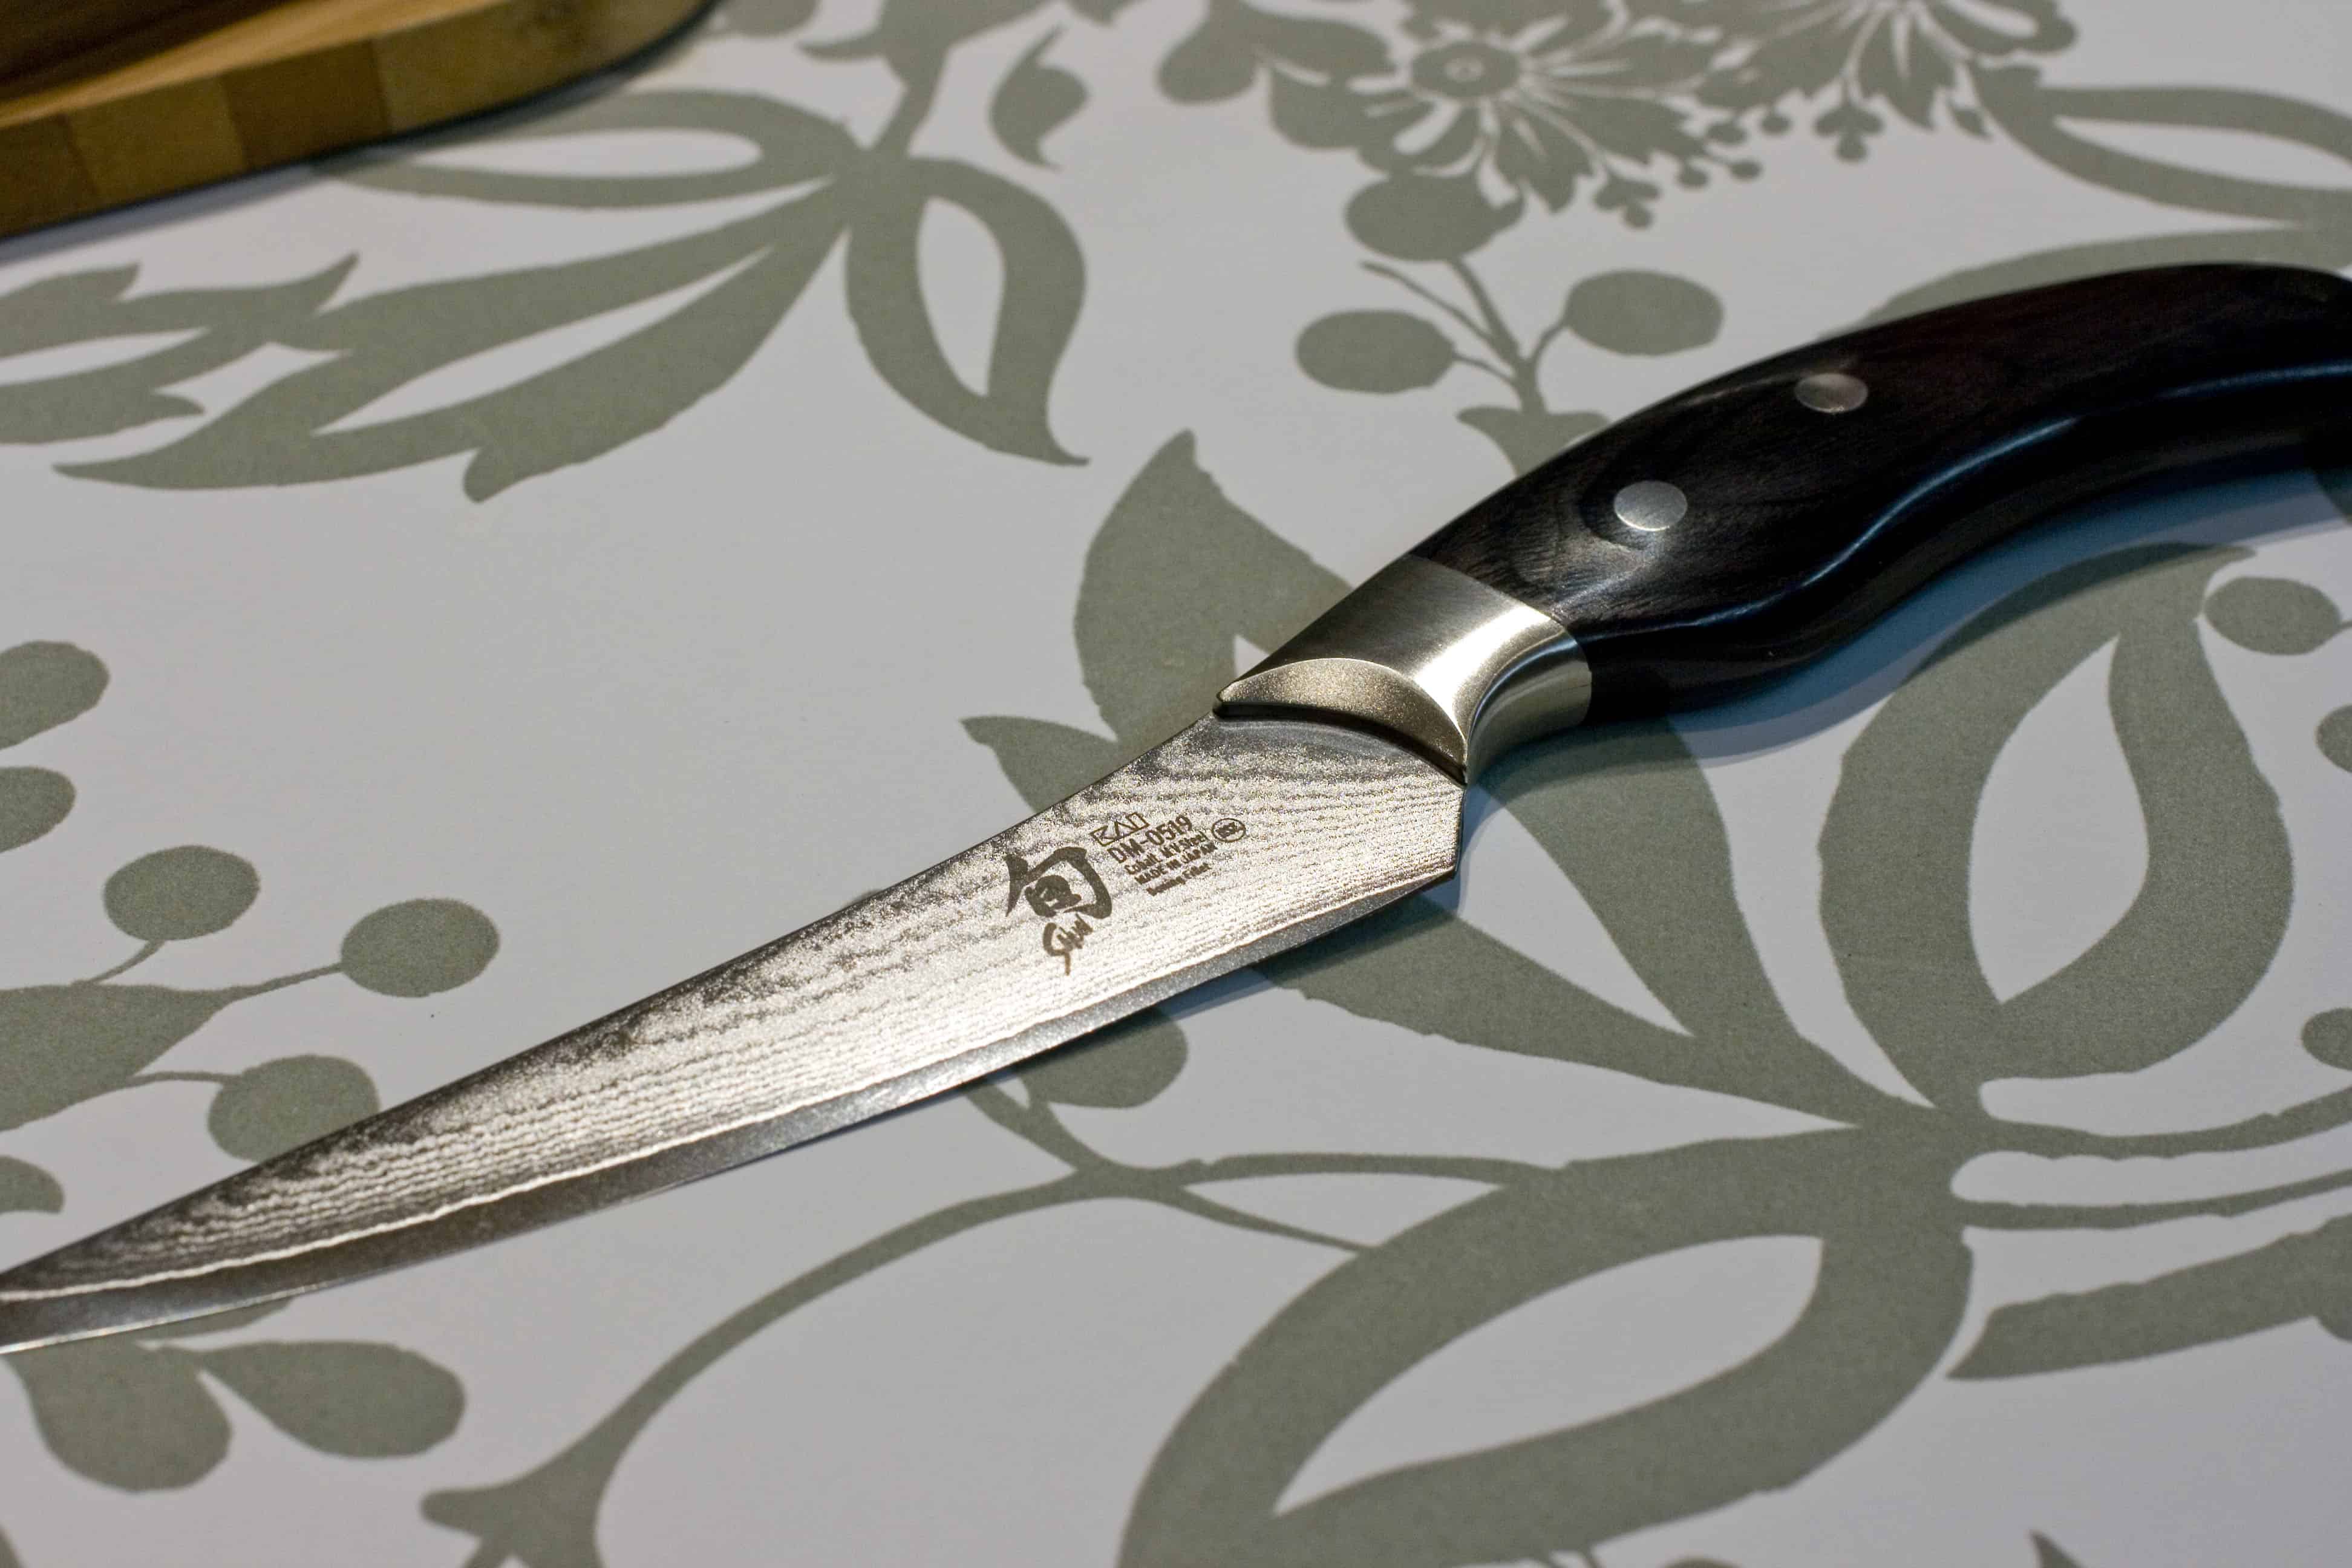 Boning knife on table